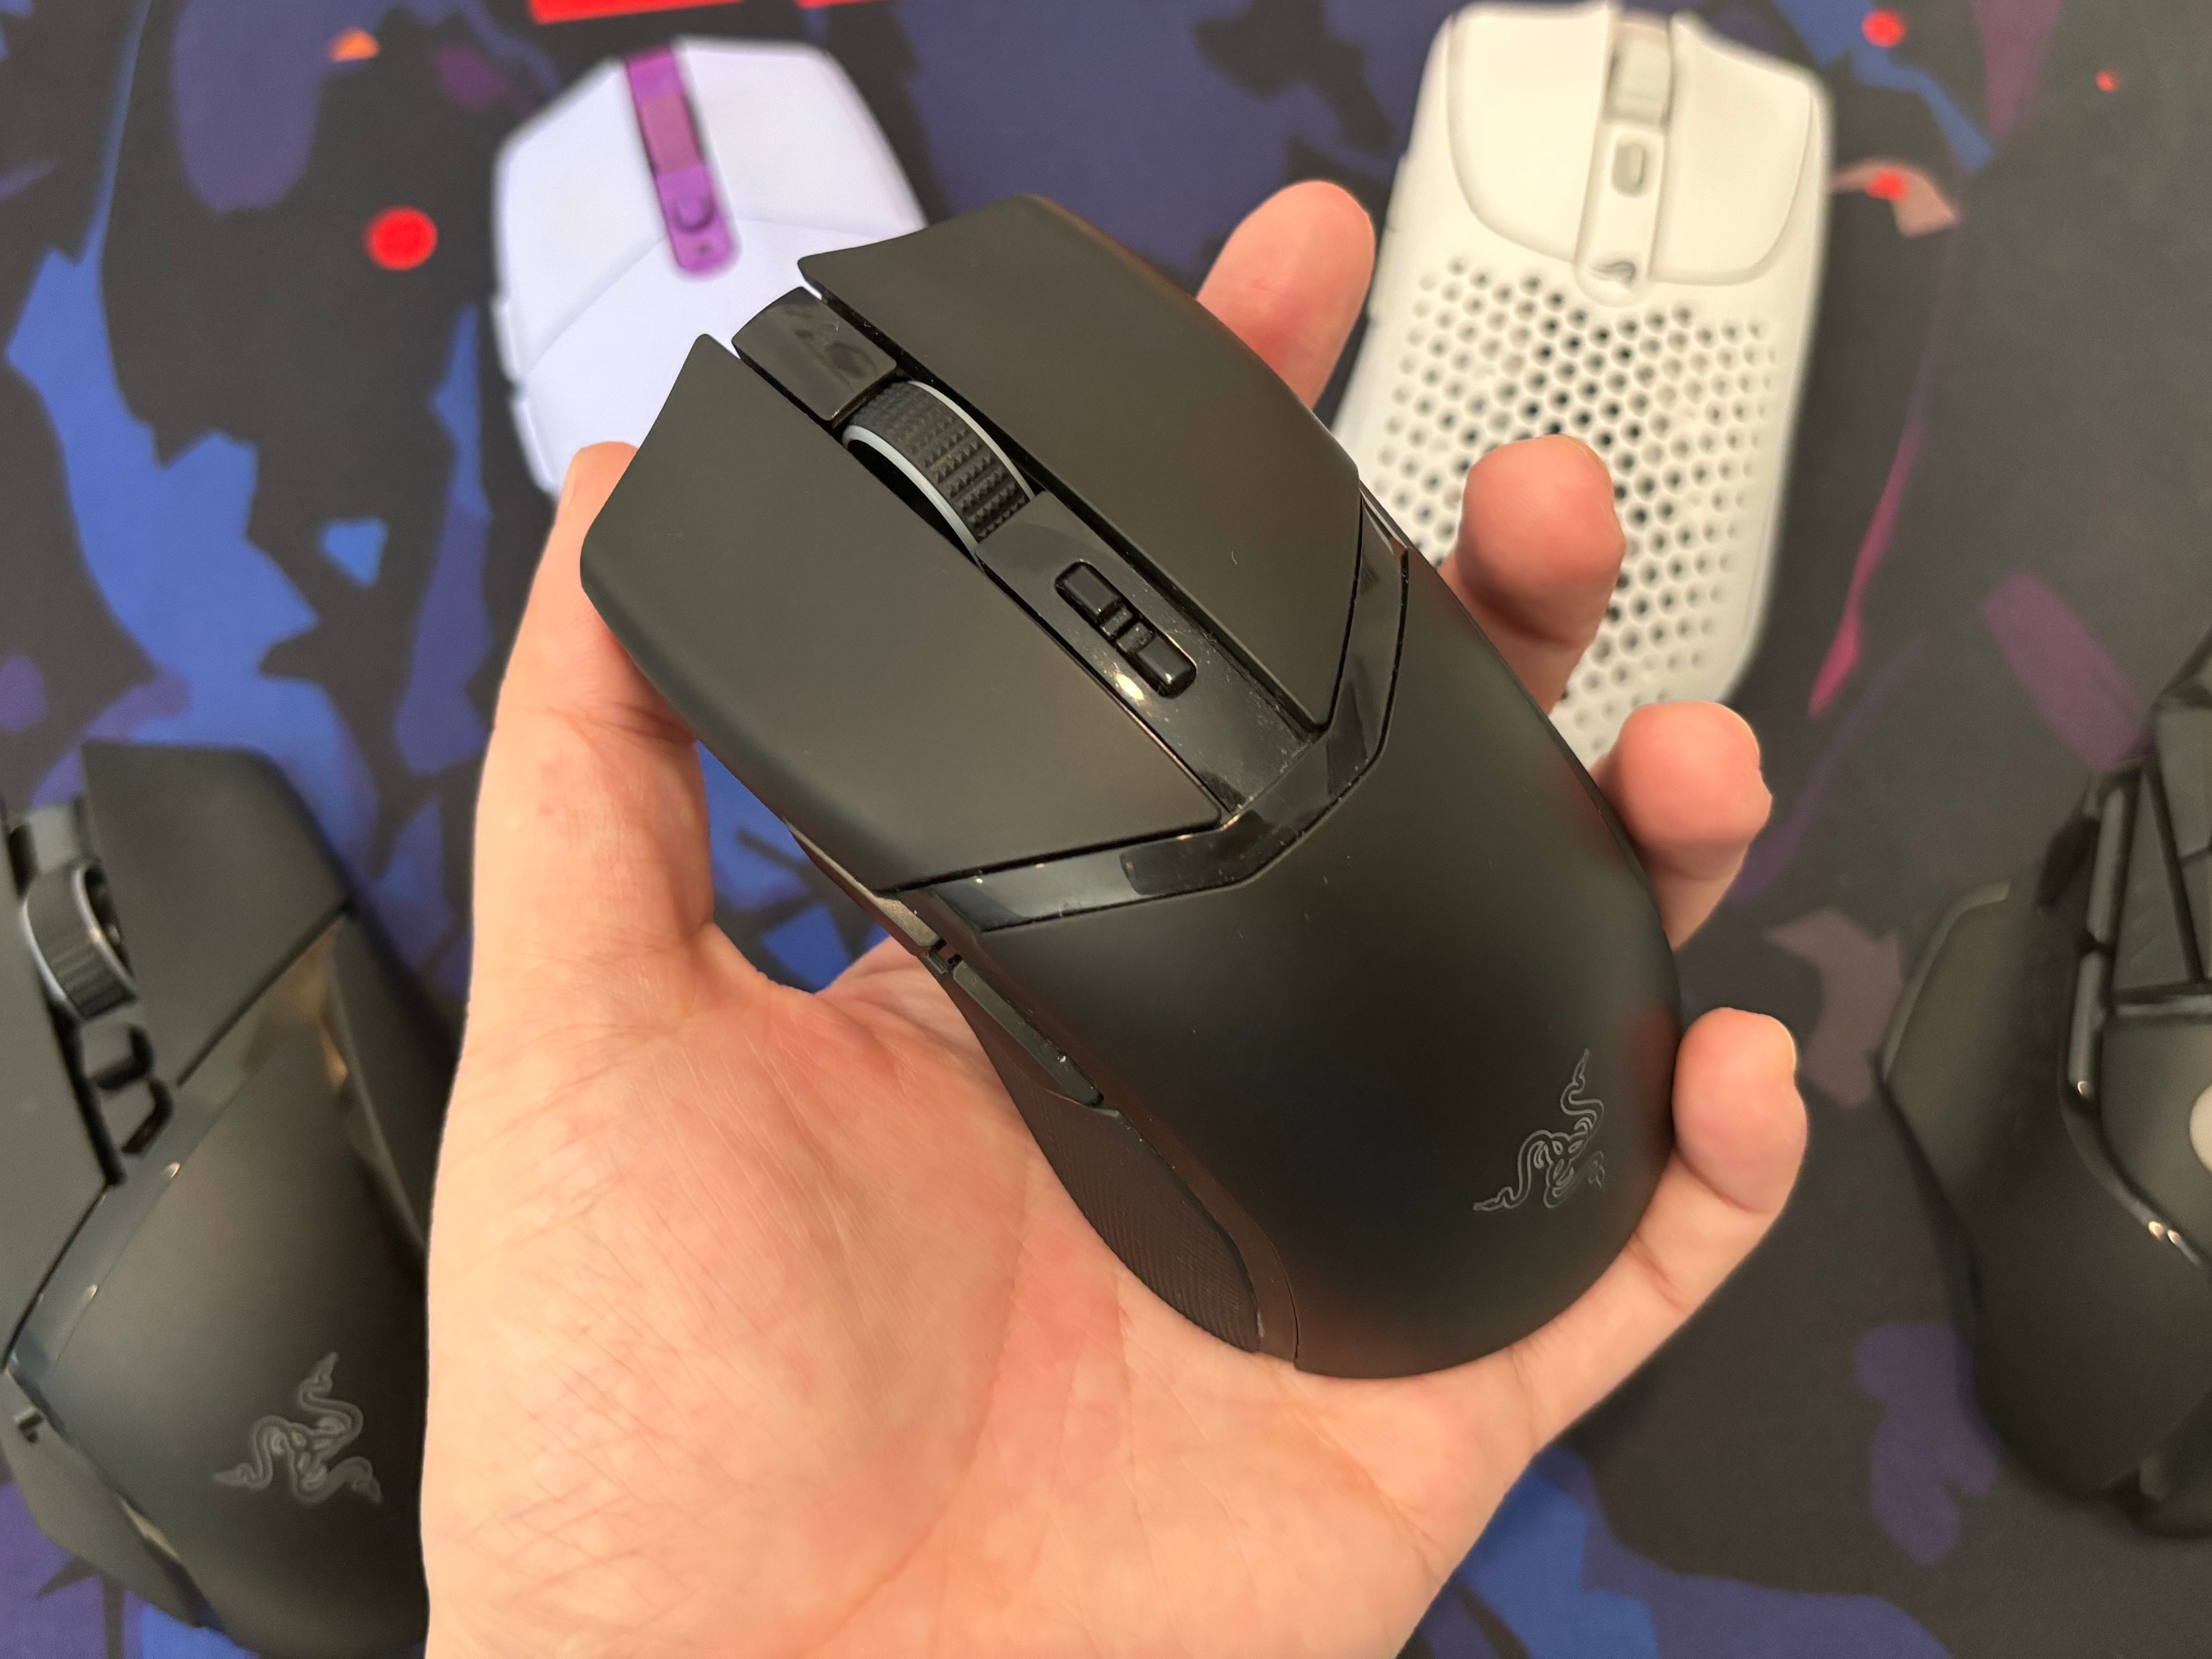 Die Razer Cobra Pro wird vor anderen kabellosen Gaming-Mäusen in der Hand gehalten